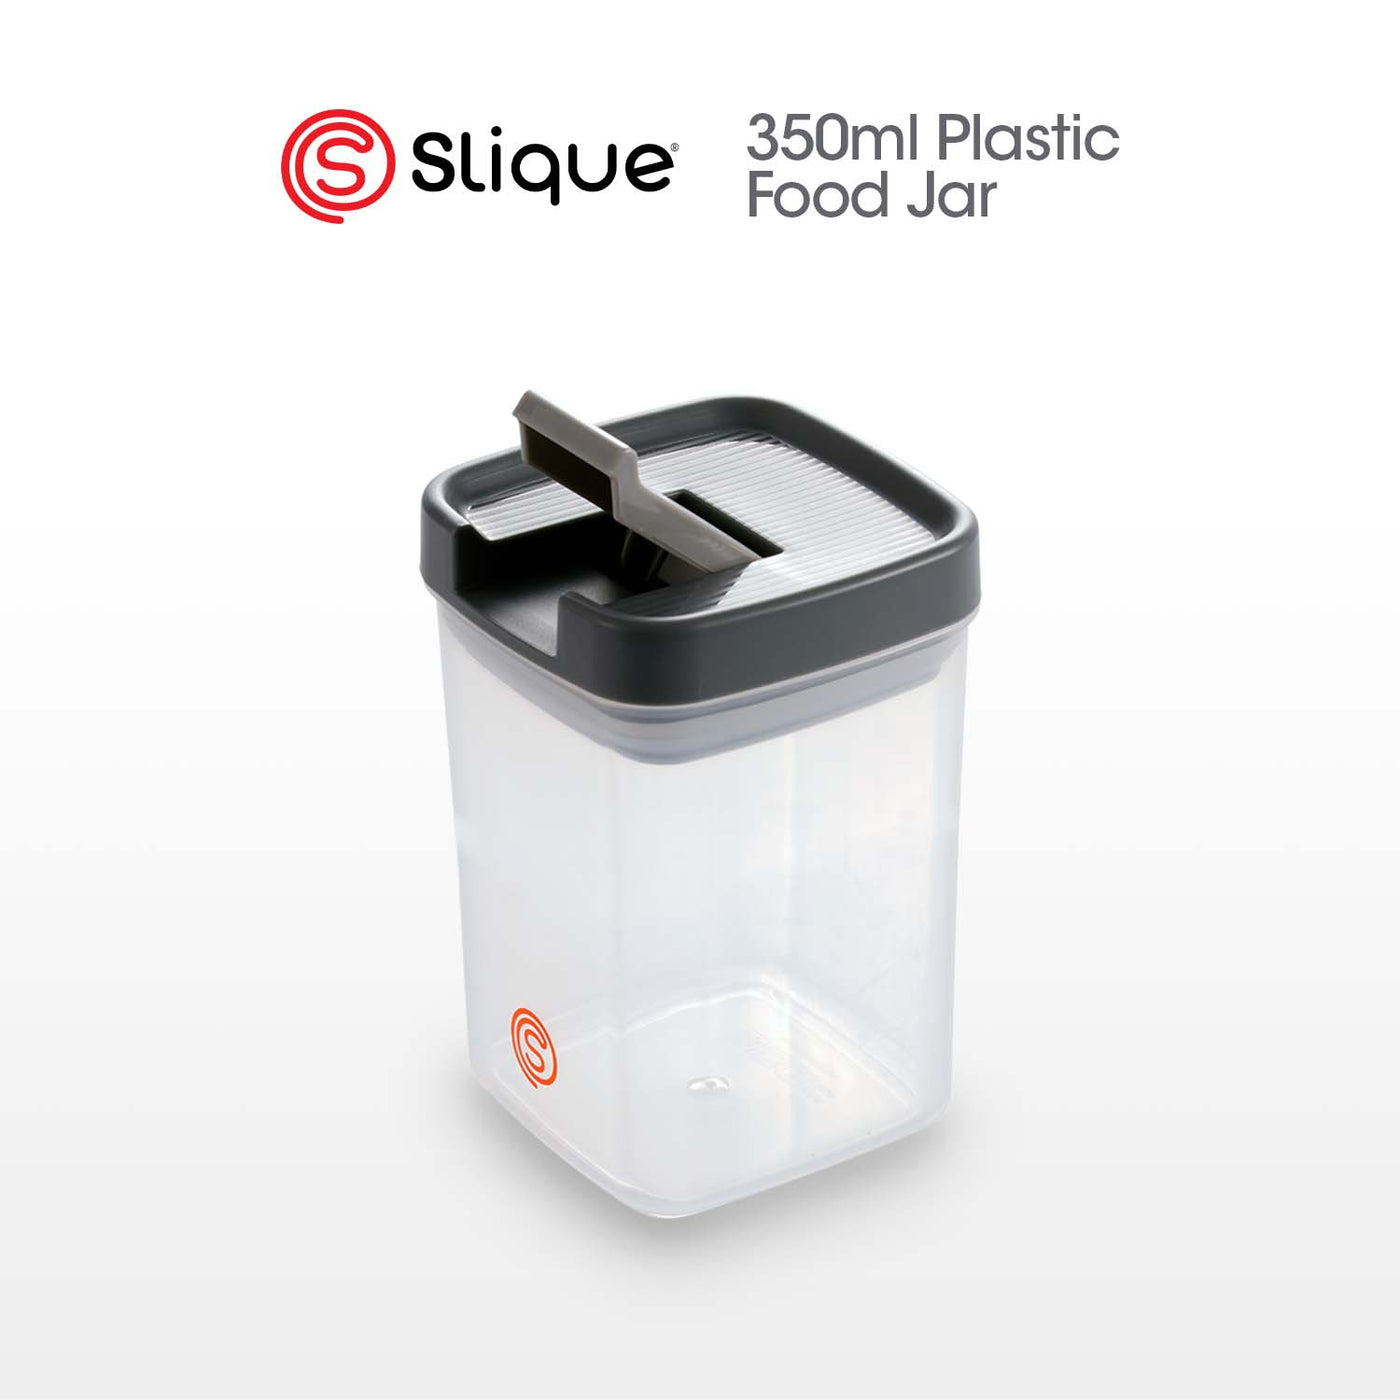 SLIQUE Premium PP Square Food Container 350ml|0.35L Airtight (Gray)